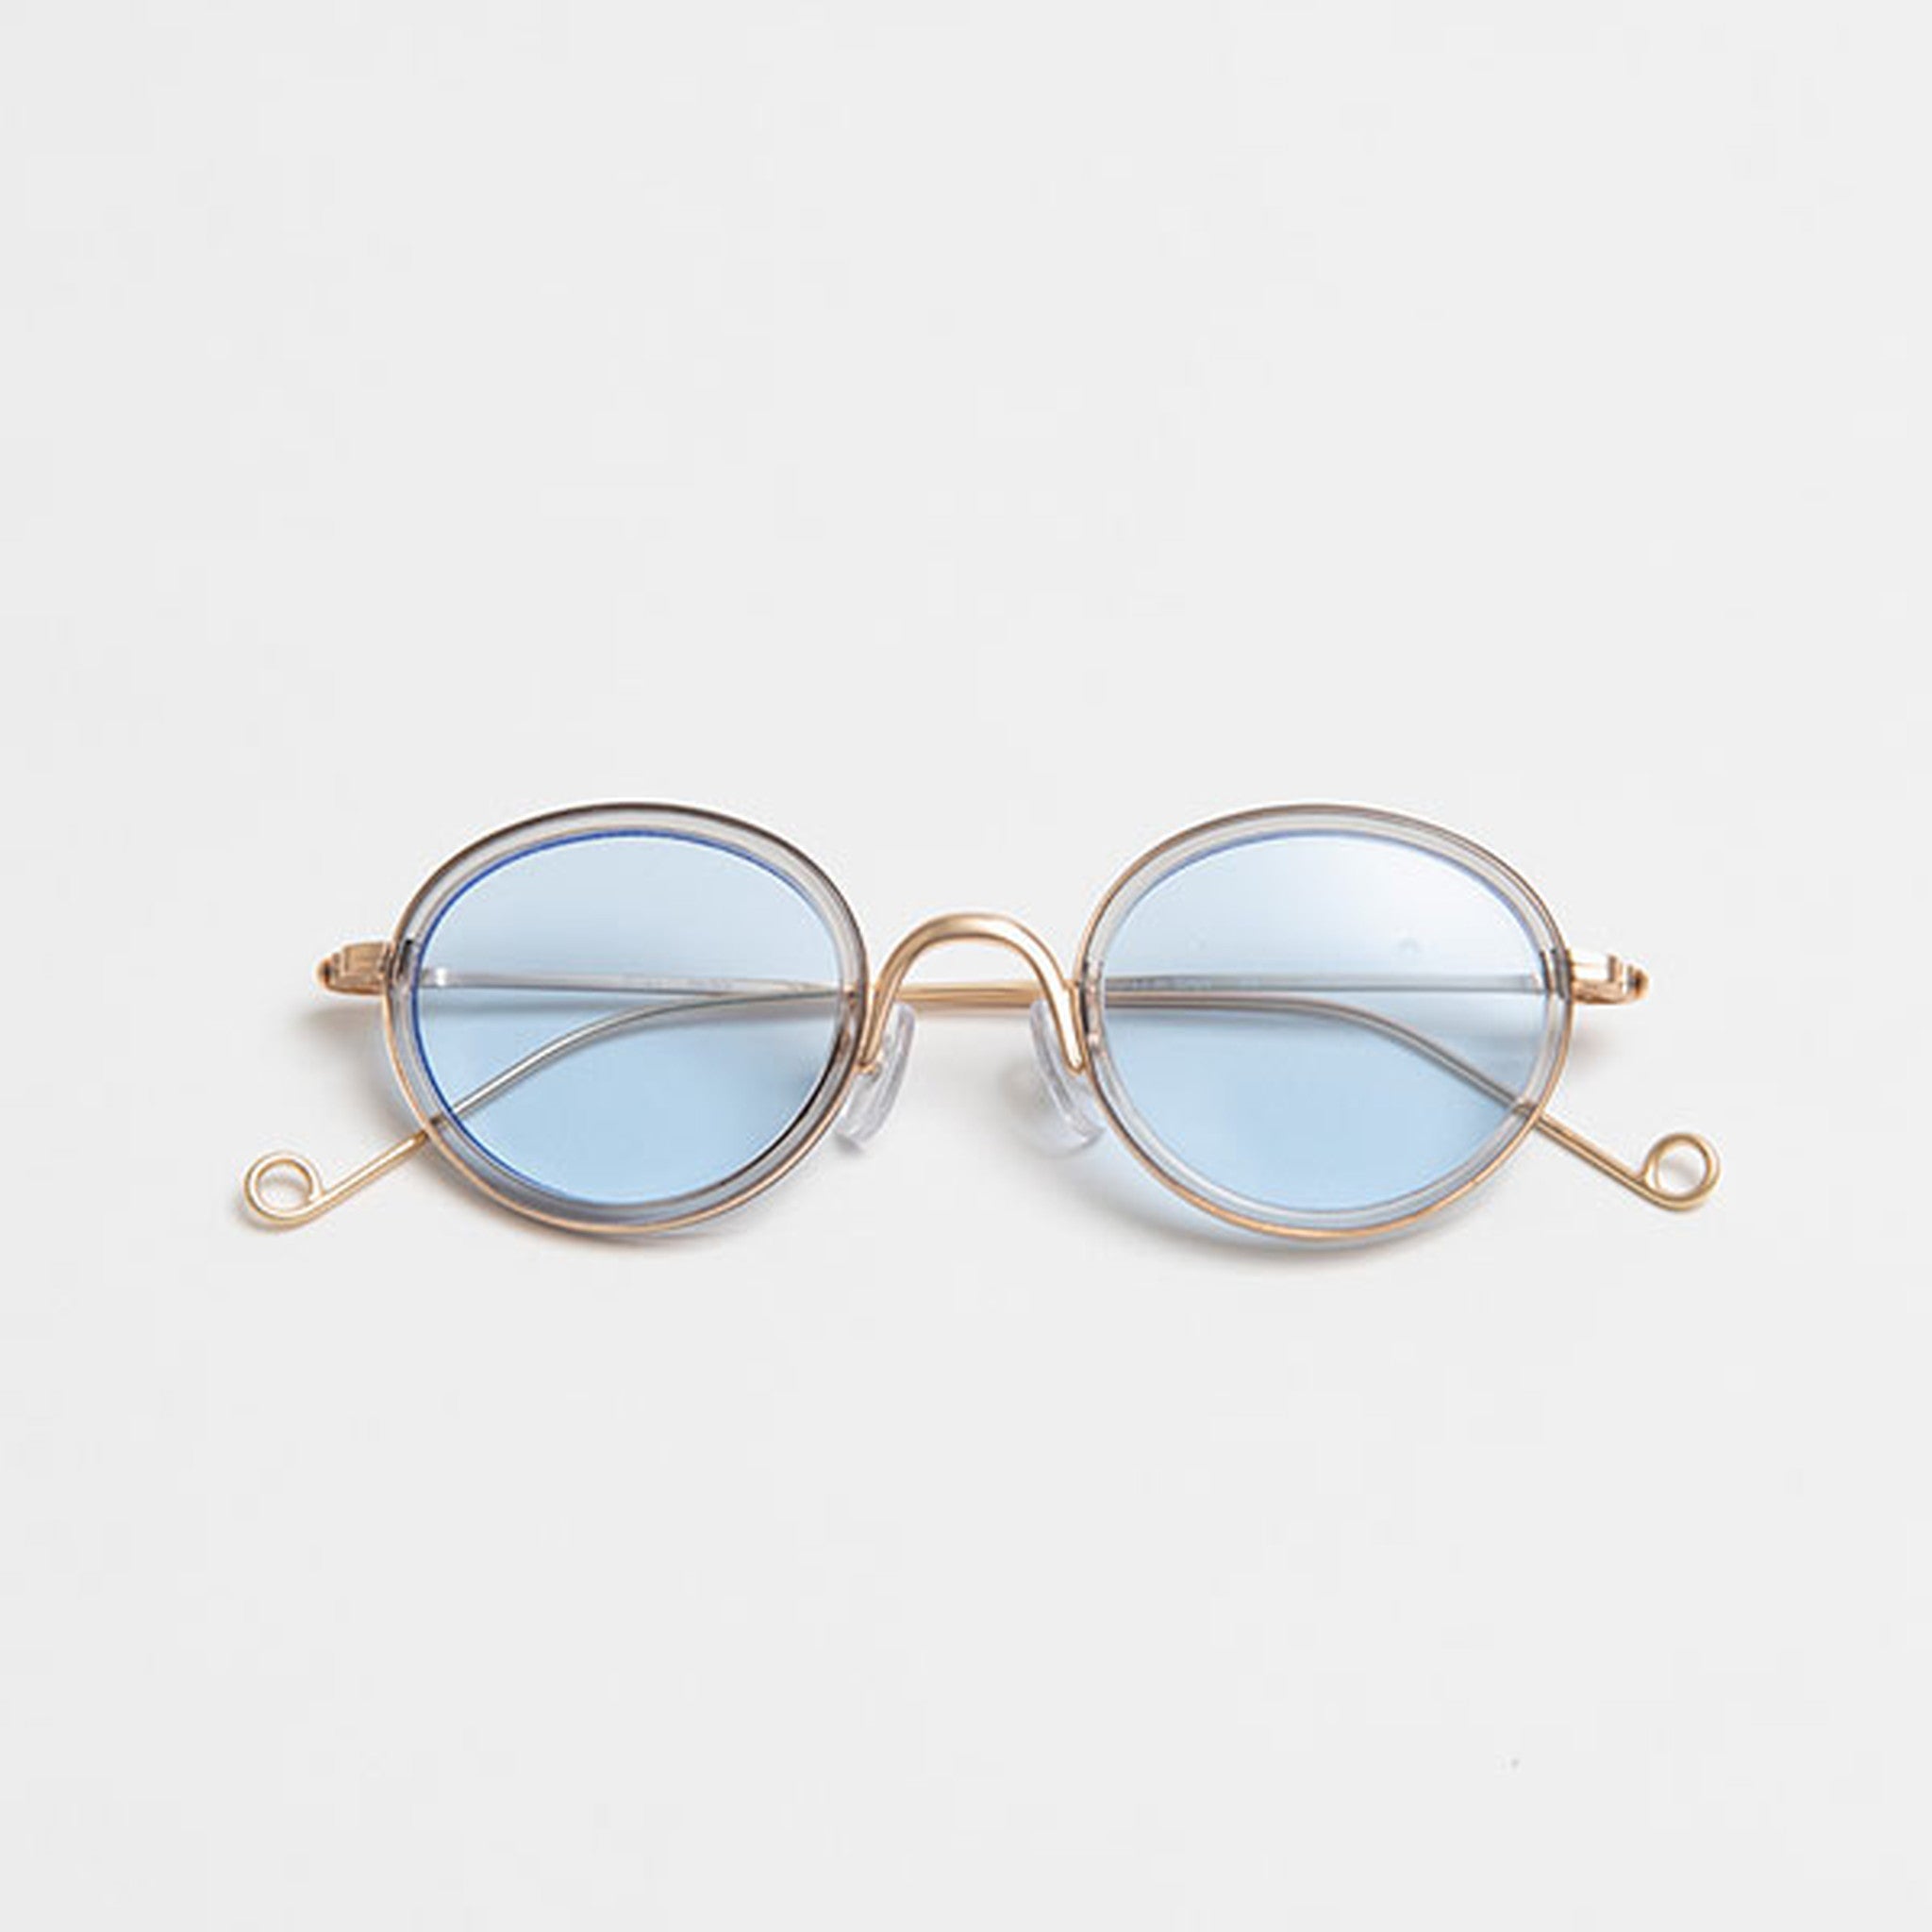 【Ciqi】HERBIE　サングラス Smoke Light Blue Lens sunglasses(ハービー スモーク ライトブルーレンズ)